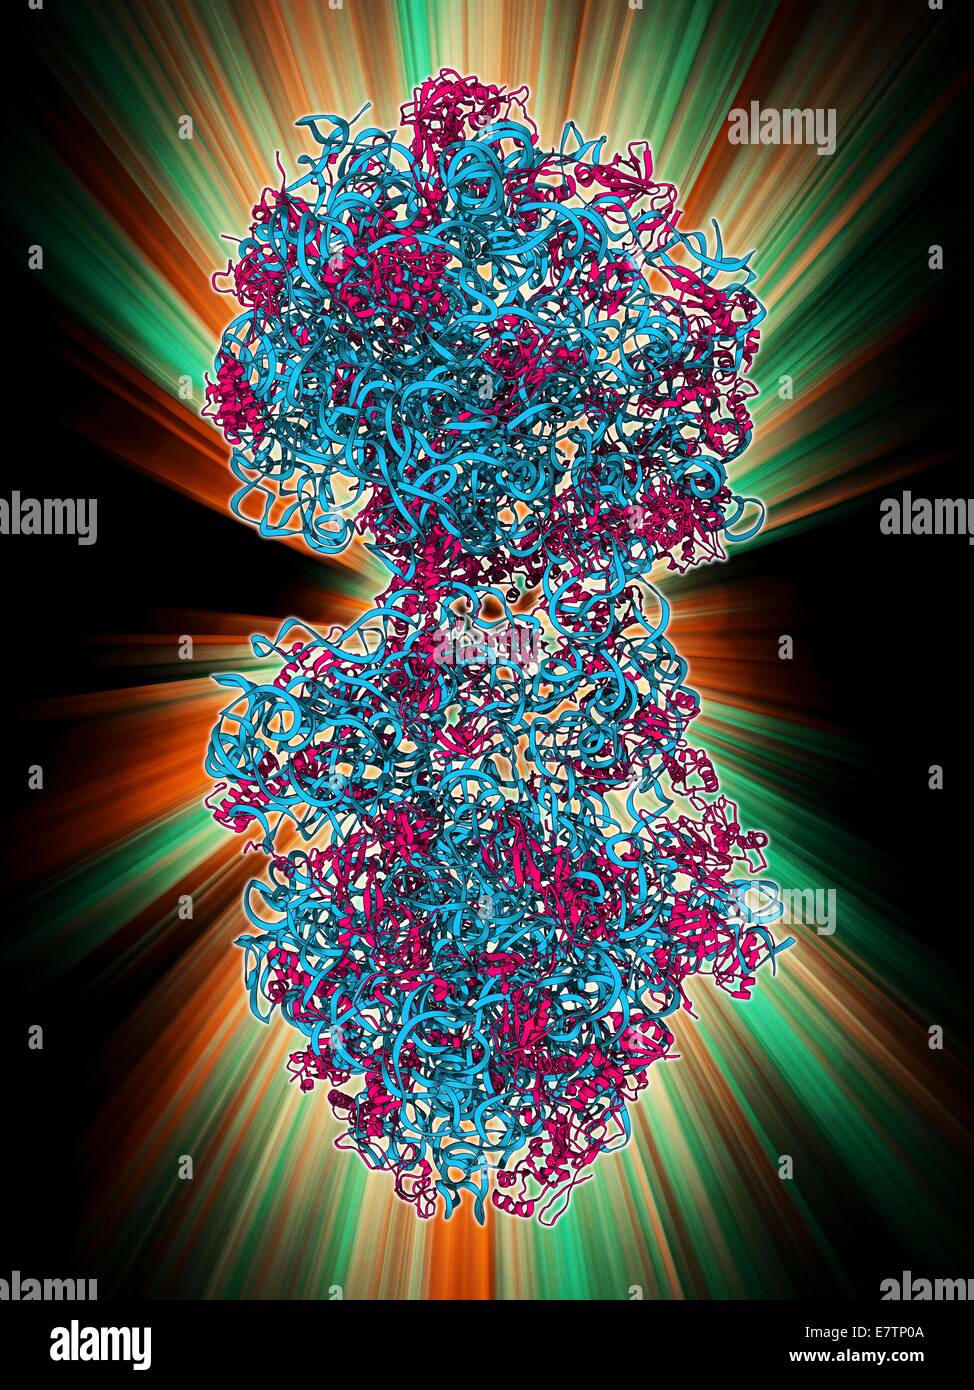 Ribosome 70S, le modèle moléculaire. Les ribosomes sont constitués de protéines et d'ARN (acide ribonucléique). Dans les bactéries chaque ribosome se compose d'une petite sous-unité (30S) et d'une grande sous-unité (50S). Elles sont le site de la traduction, le processus de synthèse des protéines. Banque D'Images